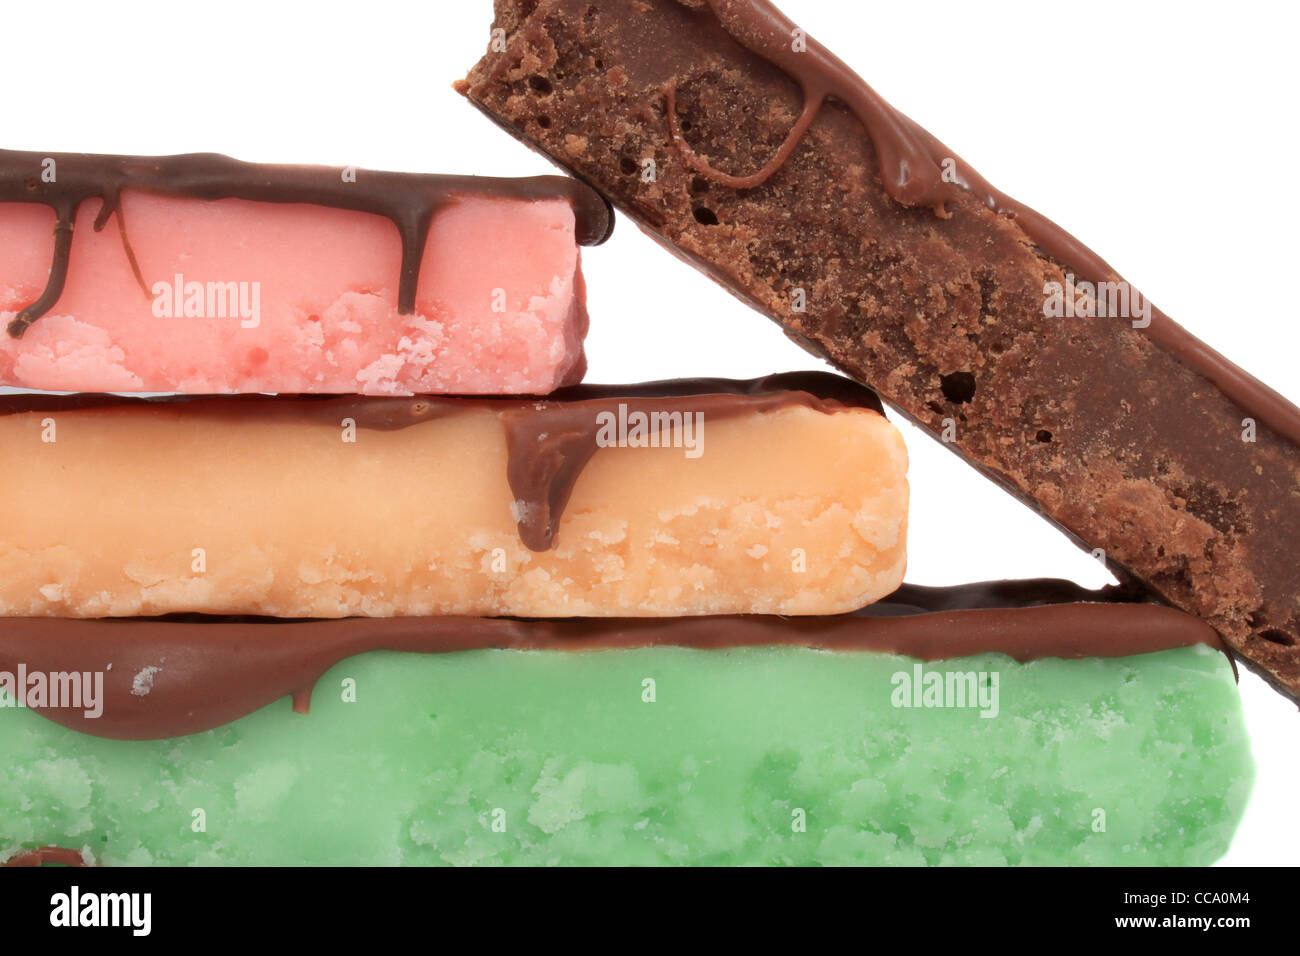 Quattro impilati fudge barre in diversi colori e sapori come la menta, arancio, cioccolato e fragola su sfondo bianco Foto Stock